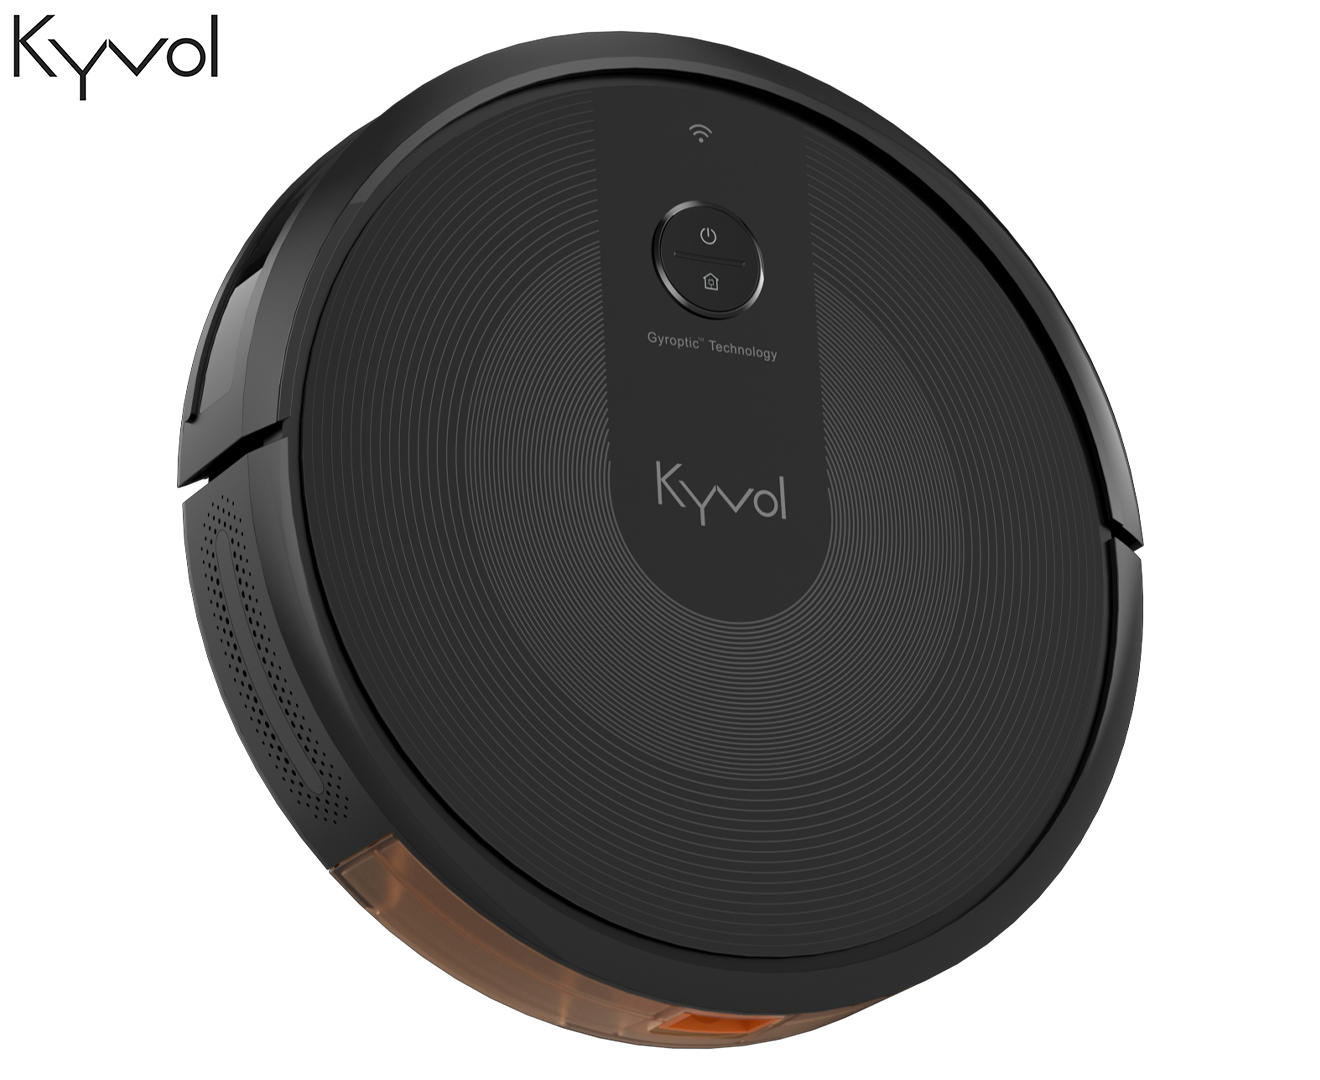 Kyvol Cybovac E30 Robot Vacuum - Black | Catch.com.au